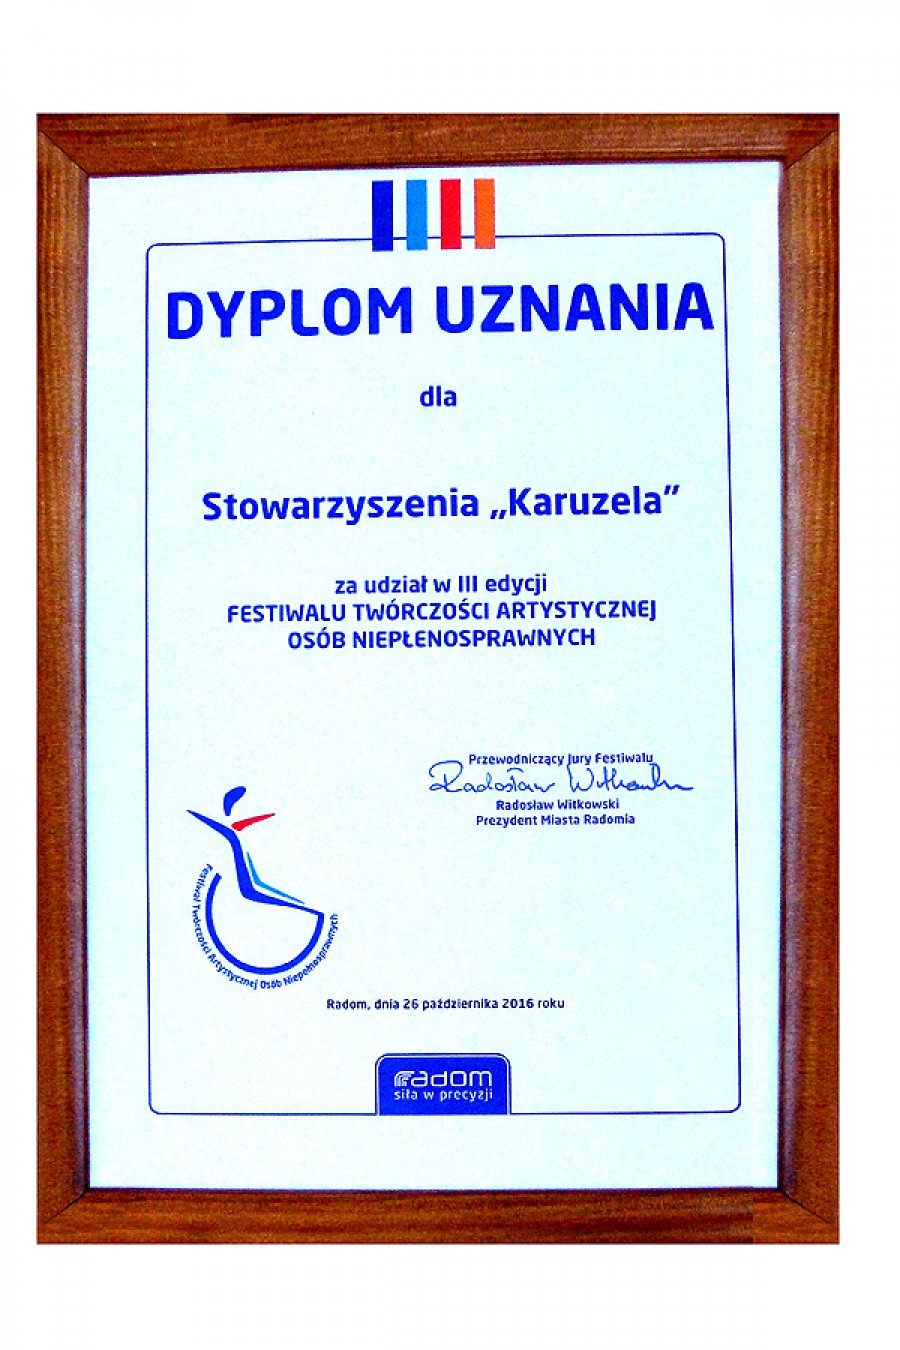 2016 Dyplom Uznania otrzymany podczas Festiwalu Twórczości Osób Niepełnosprawnych